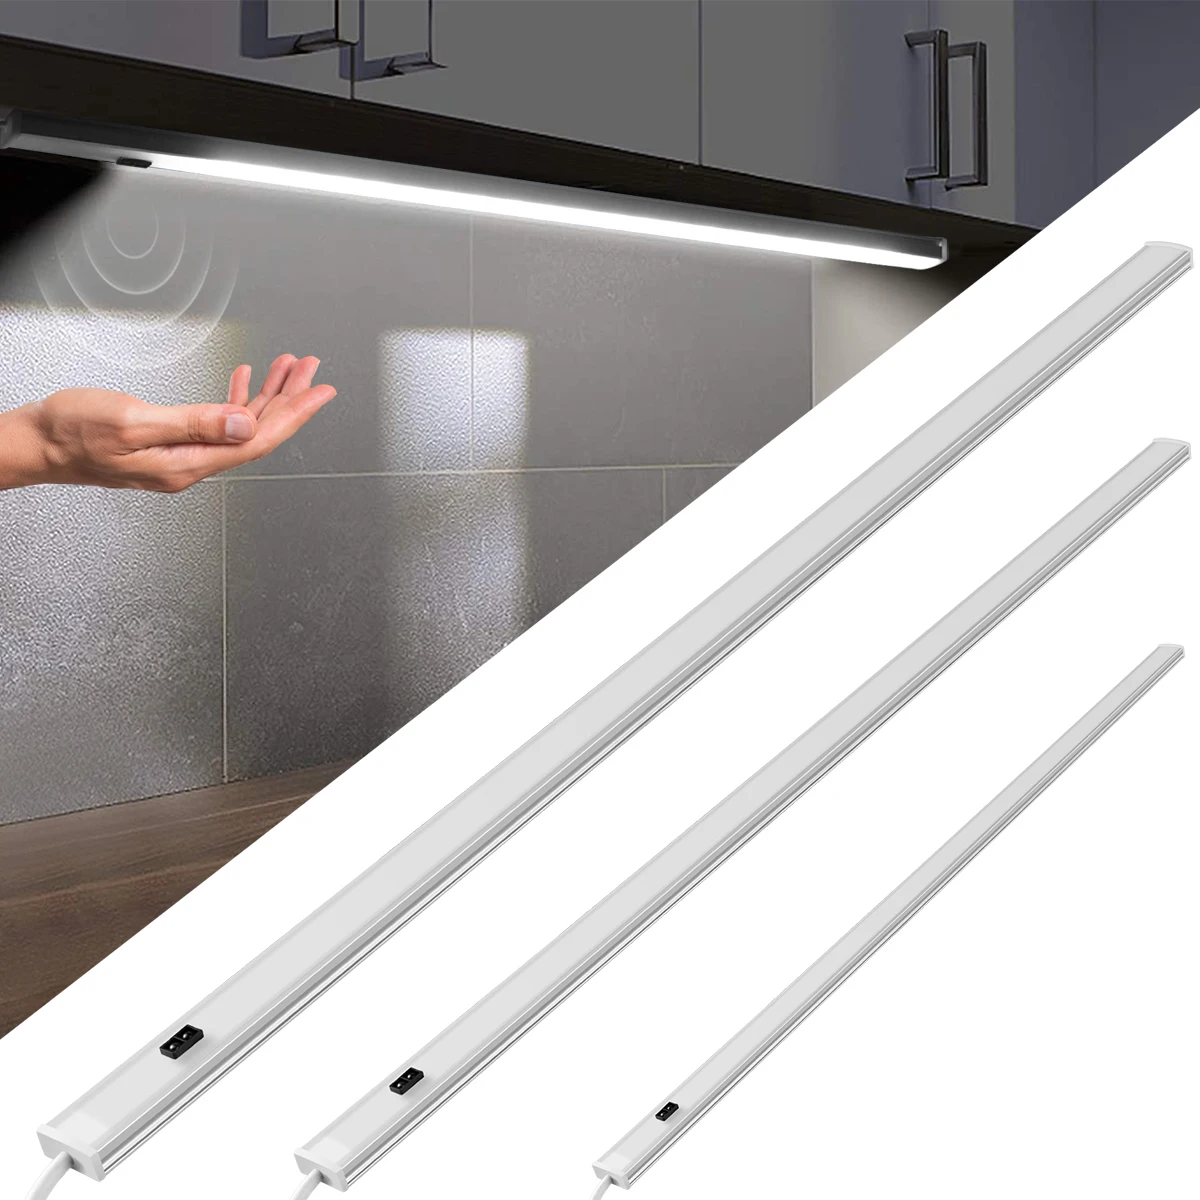 

50CM /40CM /30CM LED Bar Light Series Connection 12V Hand Waving Sensor Lamp Indoor Rigid Strip Under Cabinet Kitchen Lighting